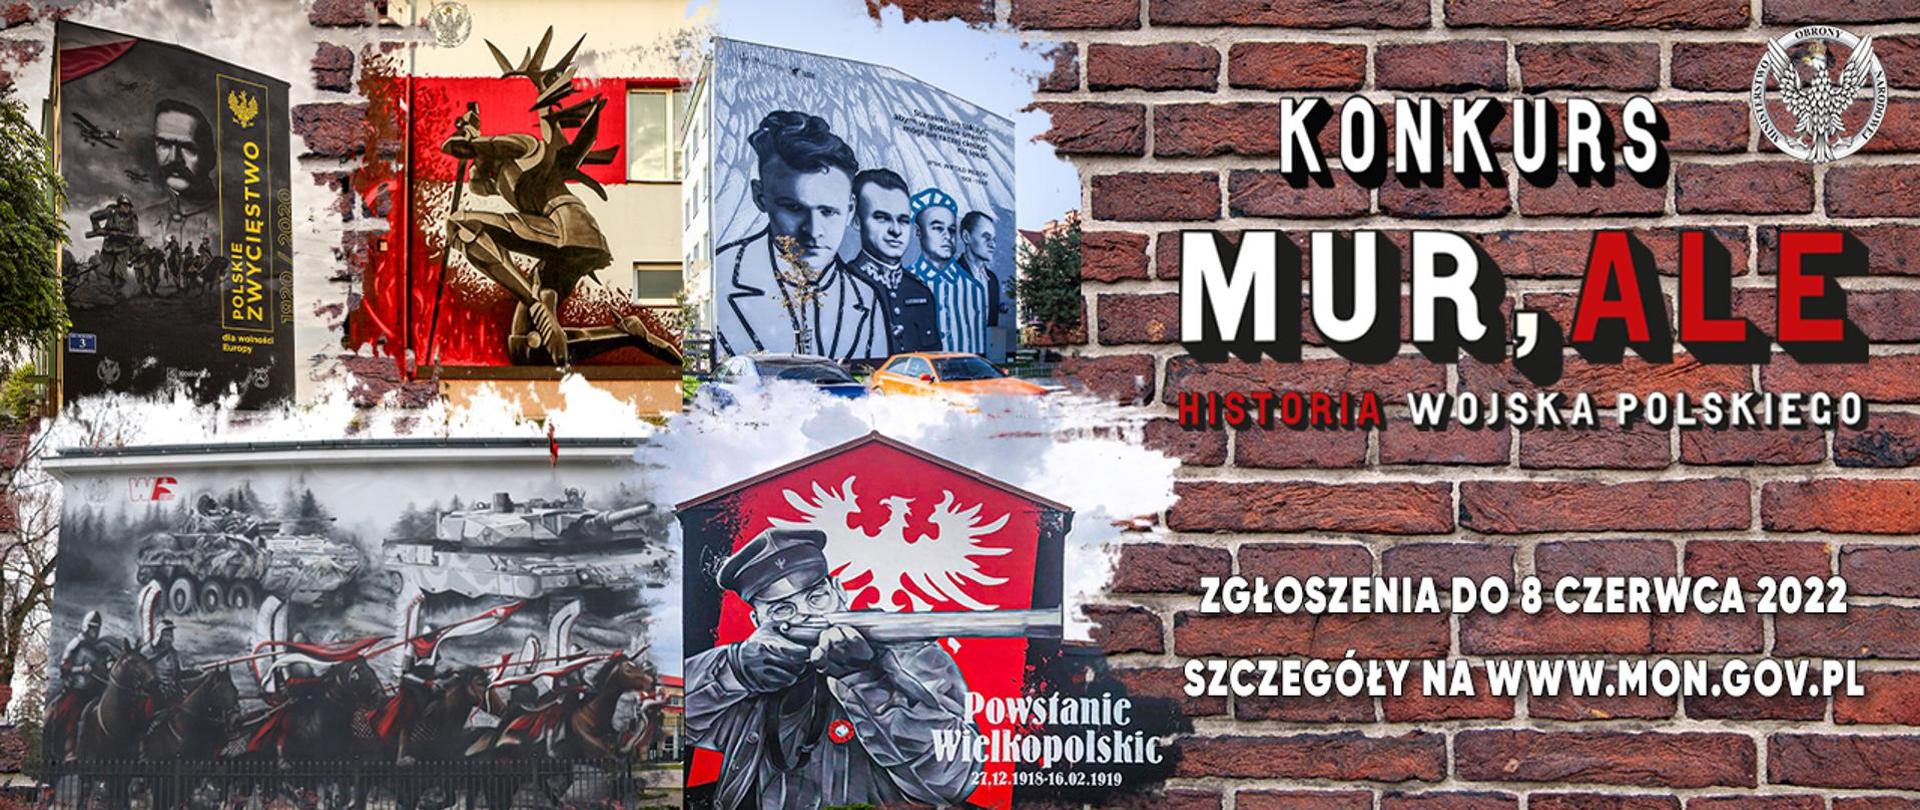 informacja o konkursie Mur, ale historia Wojska Polskiego